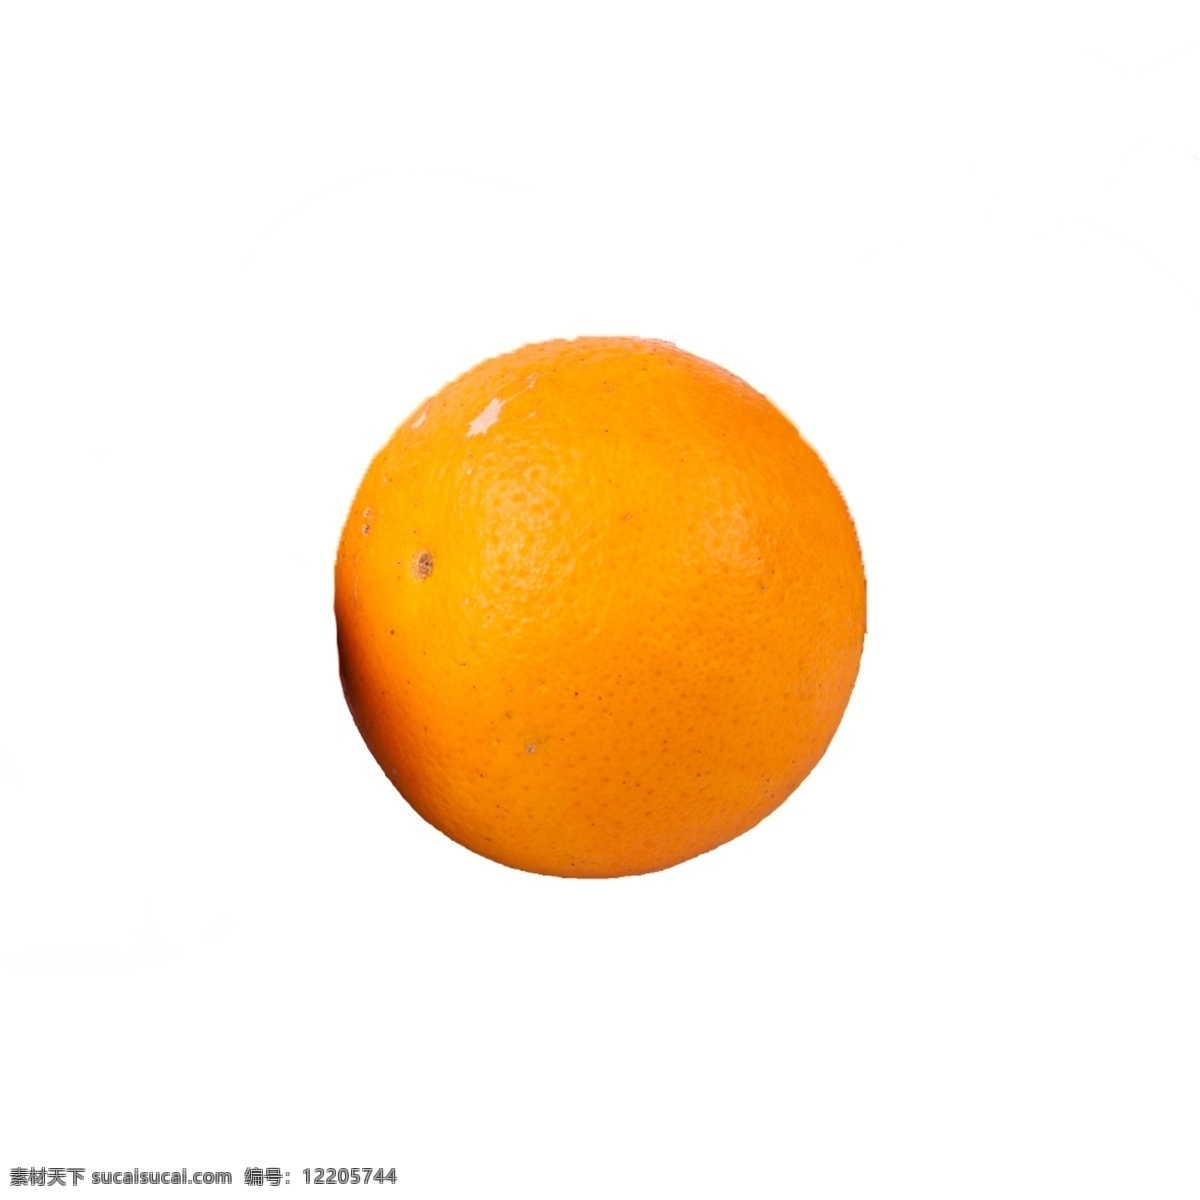 一个 橙子 免 抠 水果 好吃的橙子 一个橙子 一个橙子免抠 新鲜的橙子 有营养的橙子 甜橙